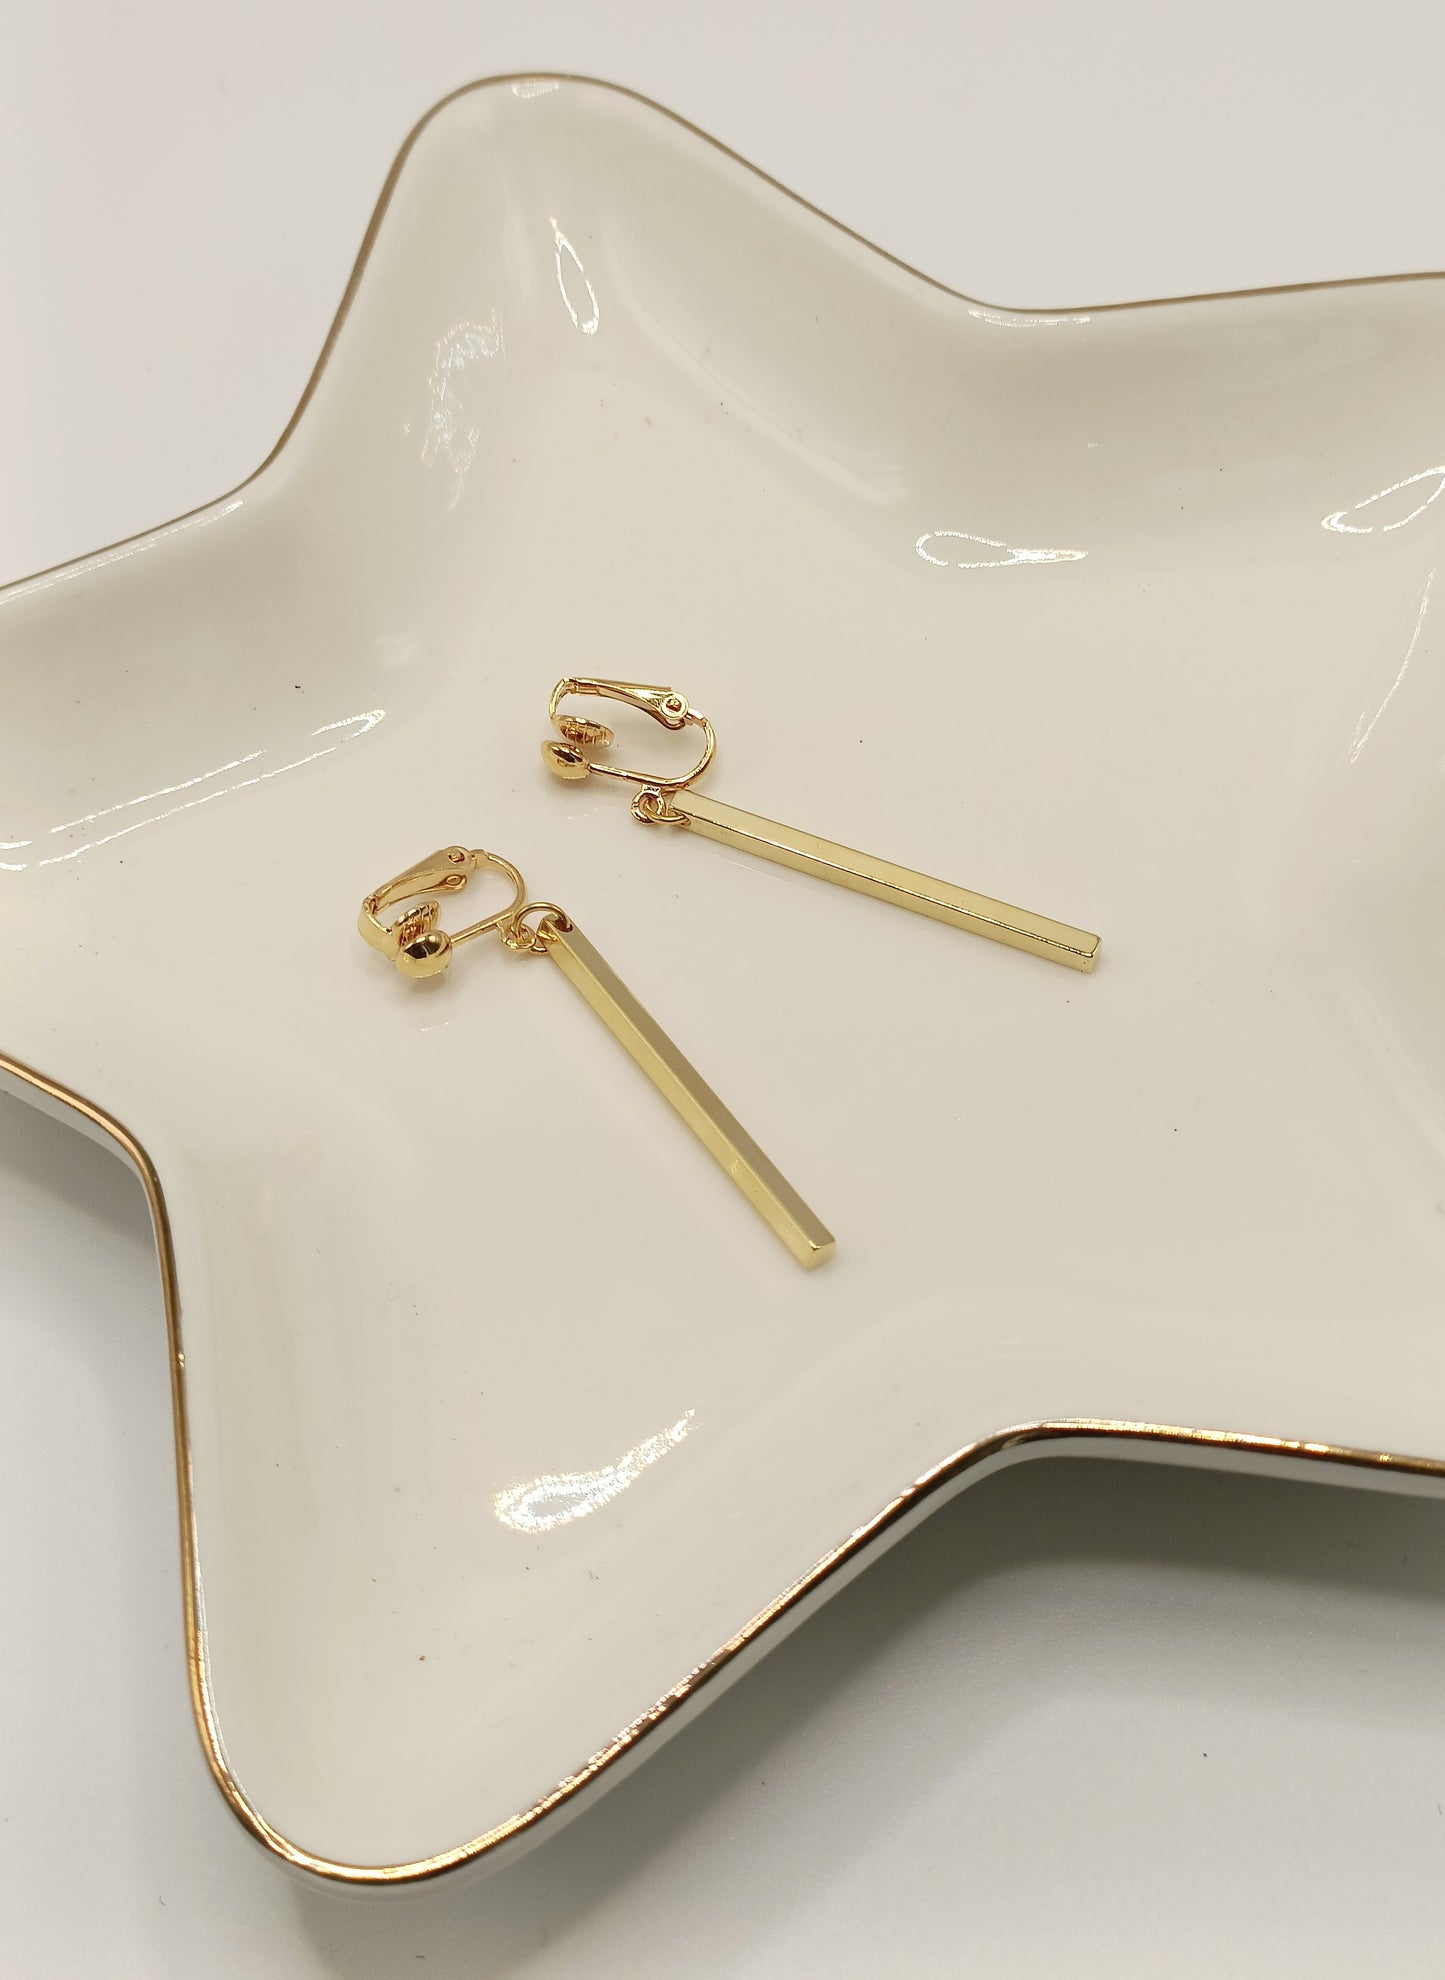 Boucles d'oreilles Baguettes dorées à l'or fin, épurées et intemporelles, en percées ou clips, 4 cm de long